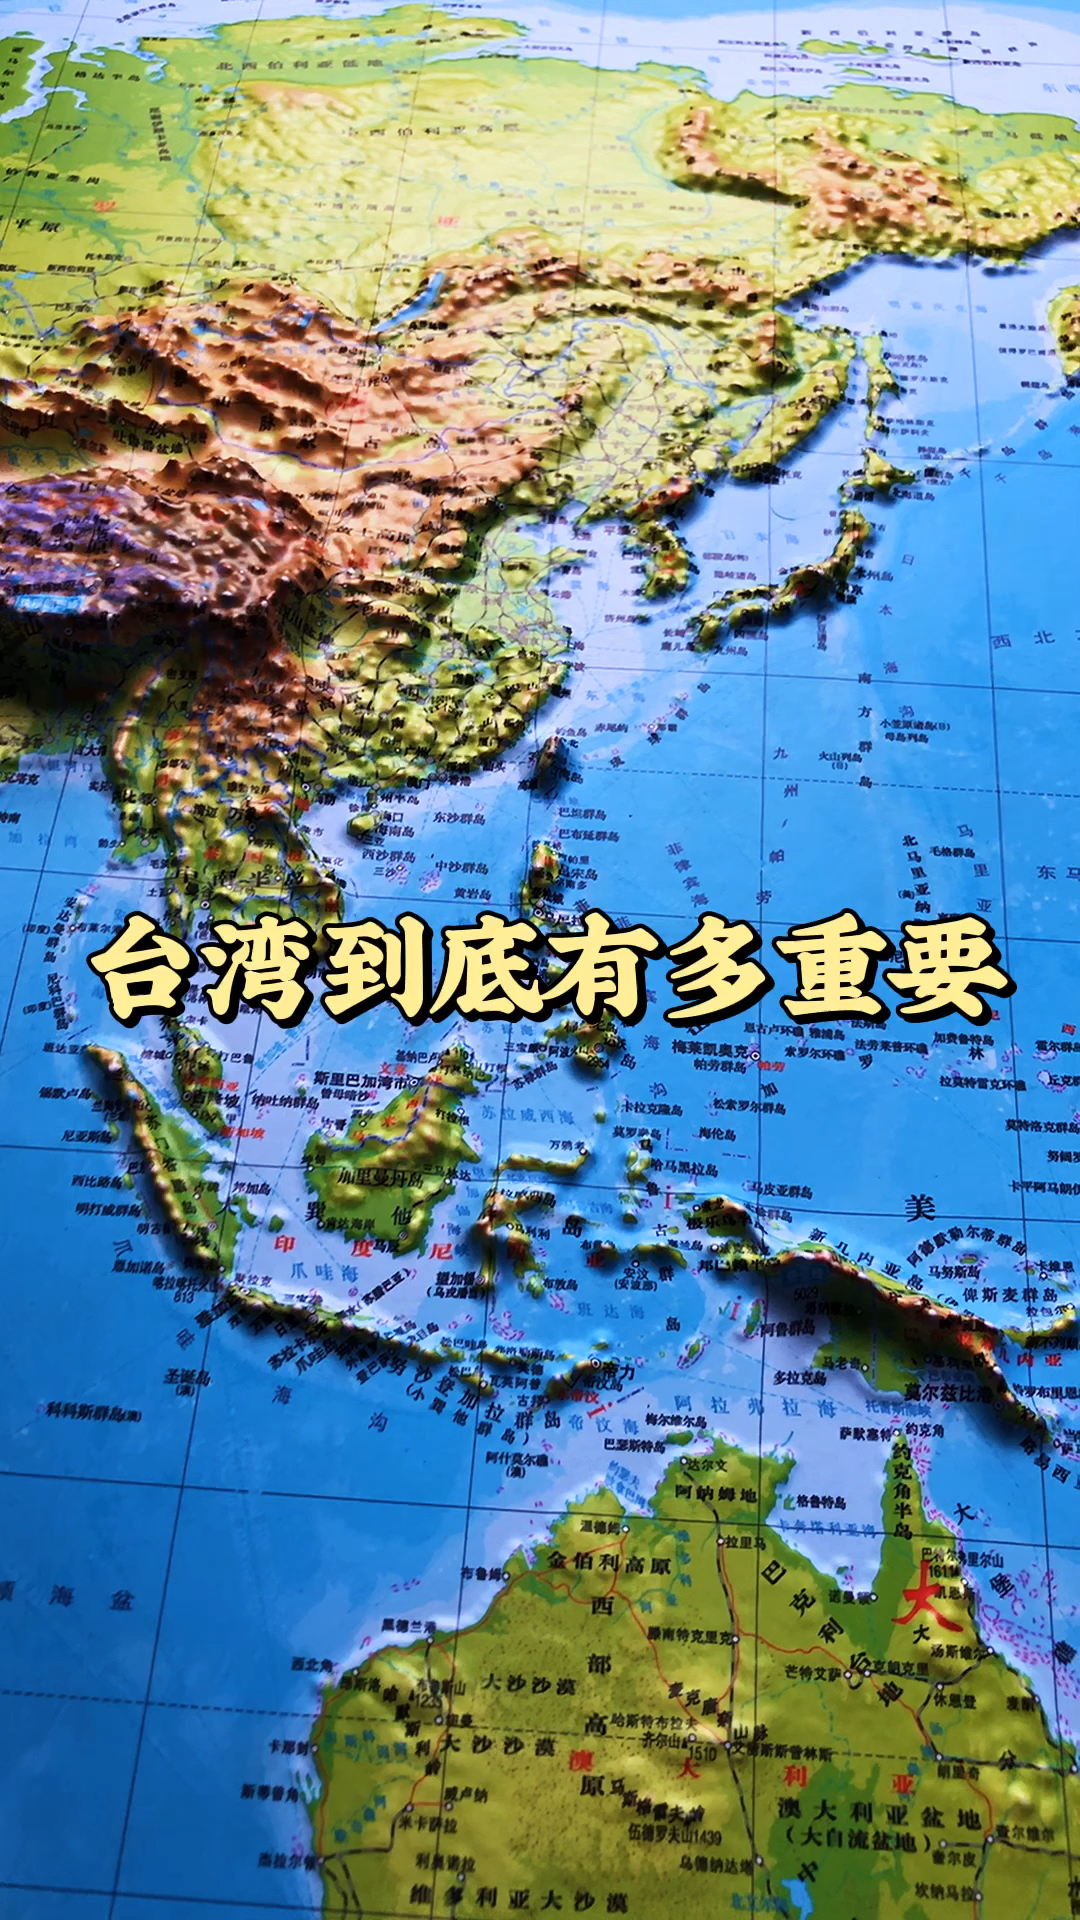 地形图台湾到底有多重要论中国台湾岛重要性